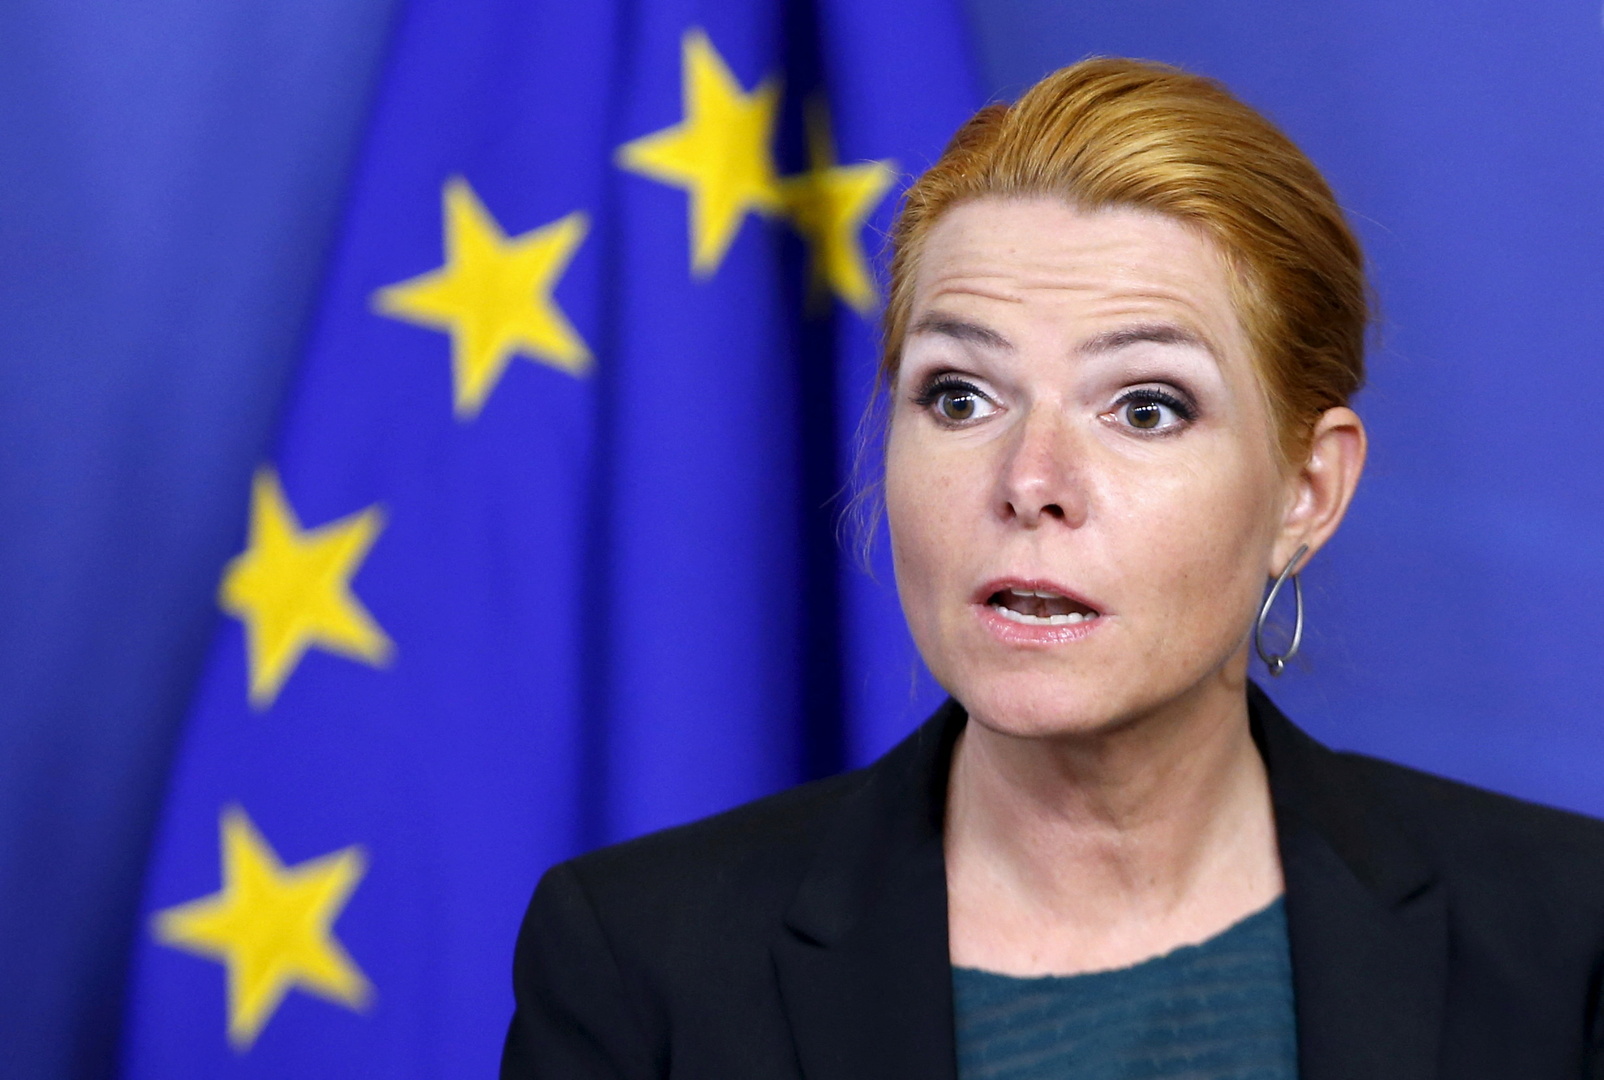 أول محاكمة عزل منذ 3 عقود.. إقالة تاريخية لوزيرة دنماركية وسجنها بسبب لاجئ سوري